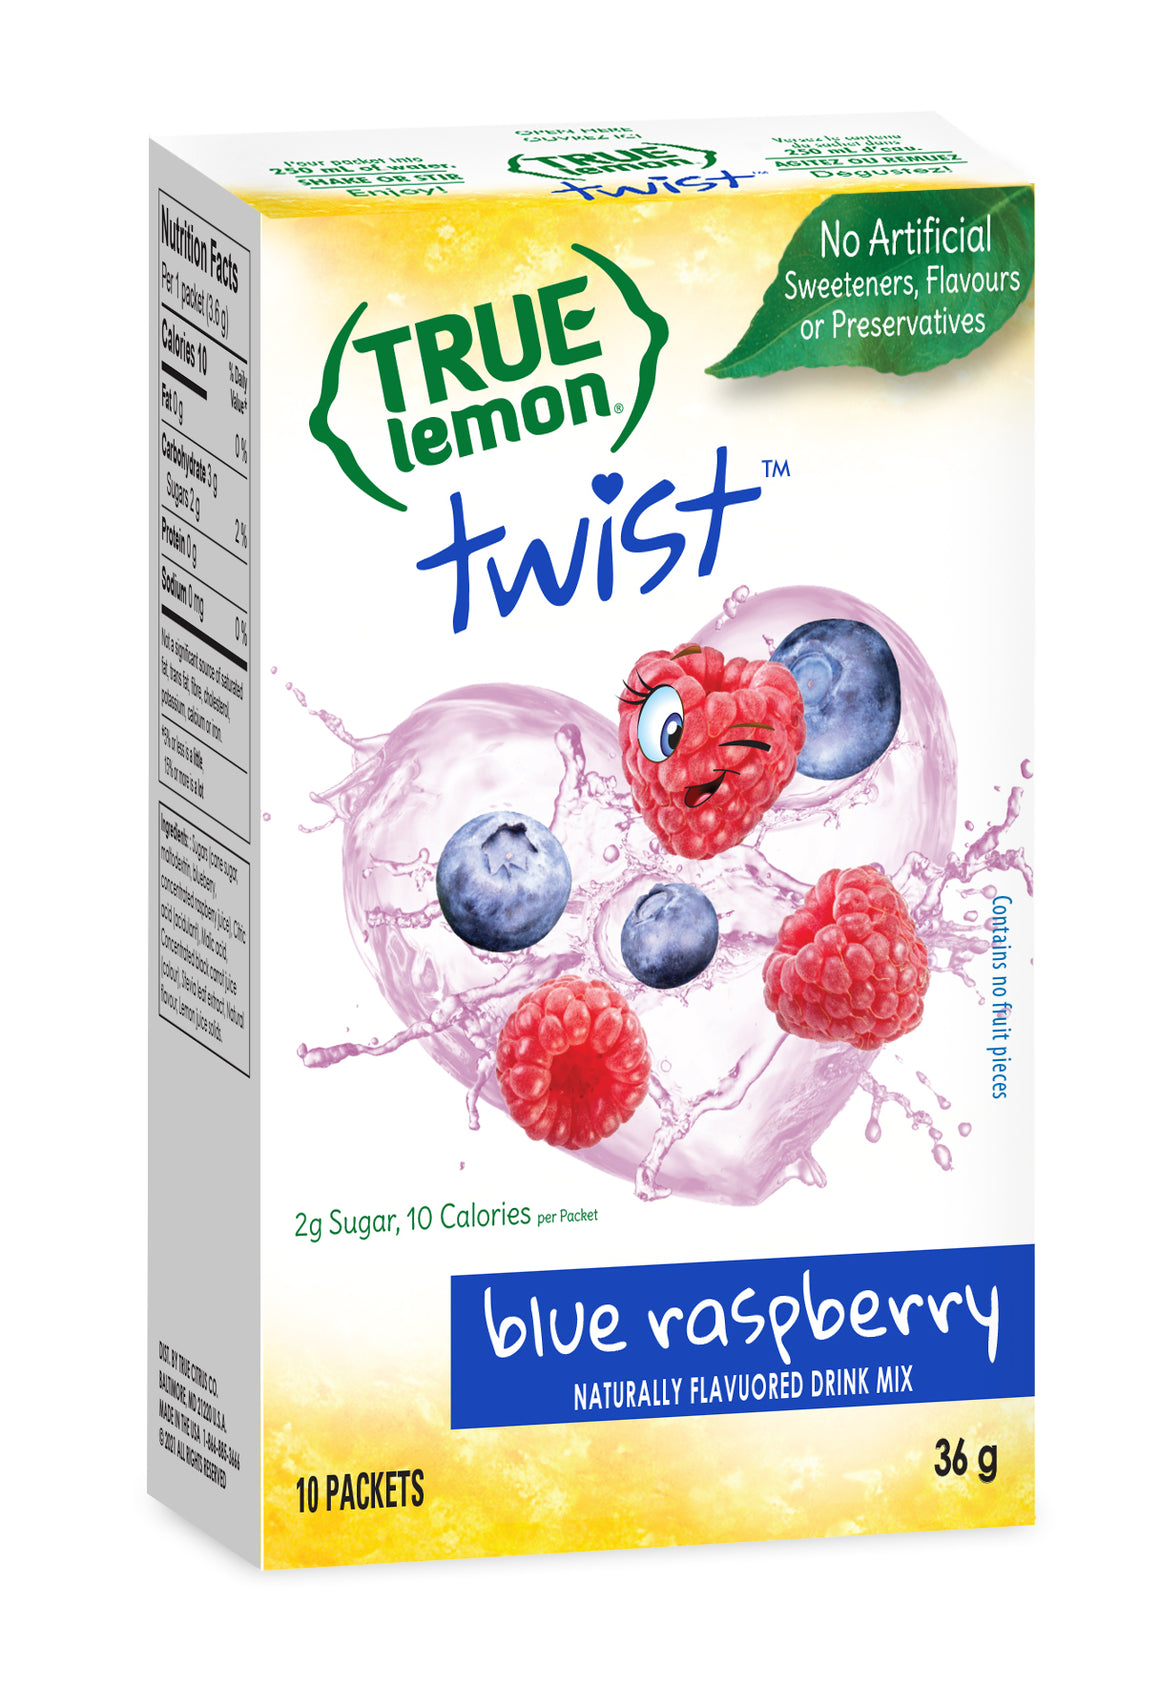 True Lemon Twist 30-Count Fun Pack Variety Pack